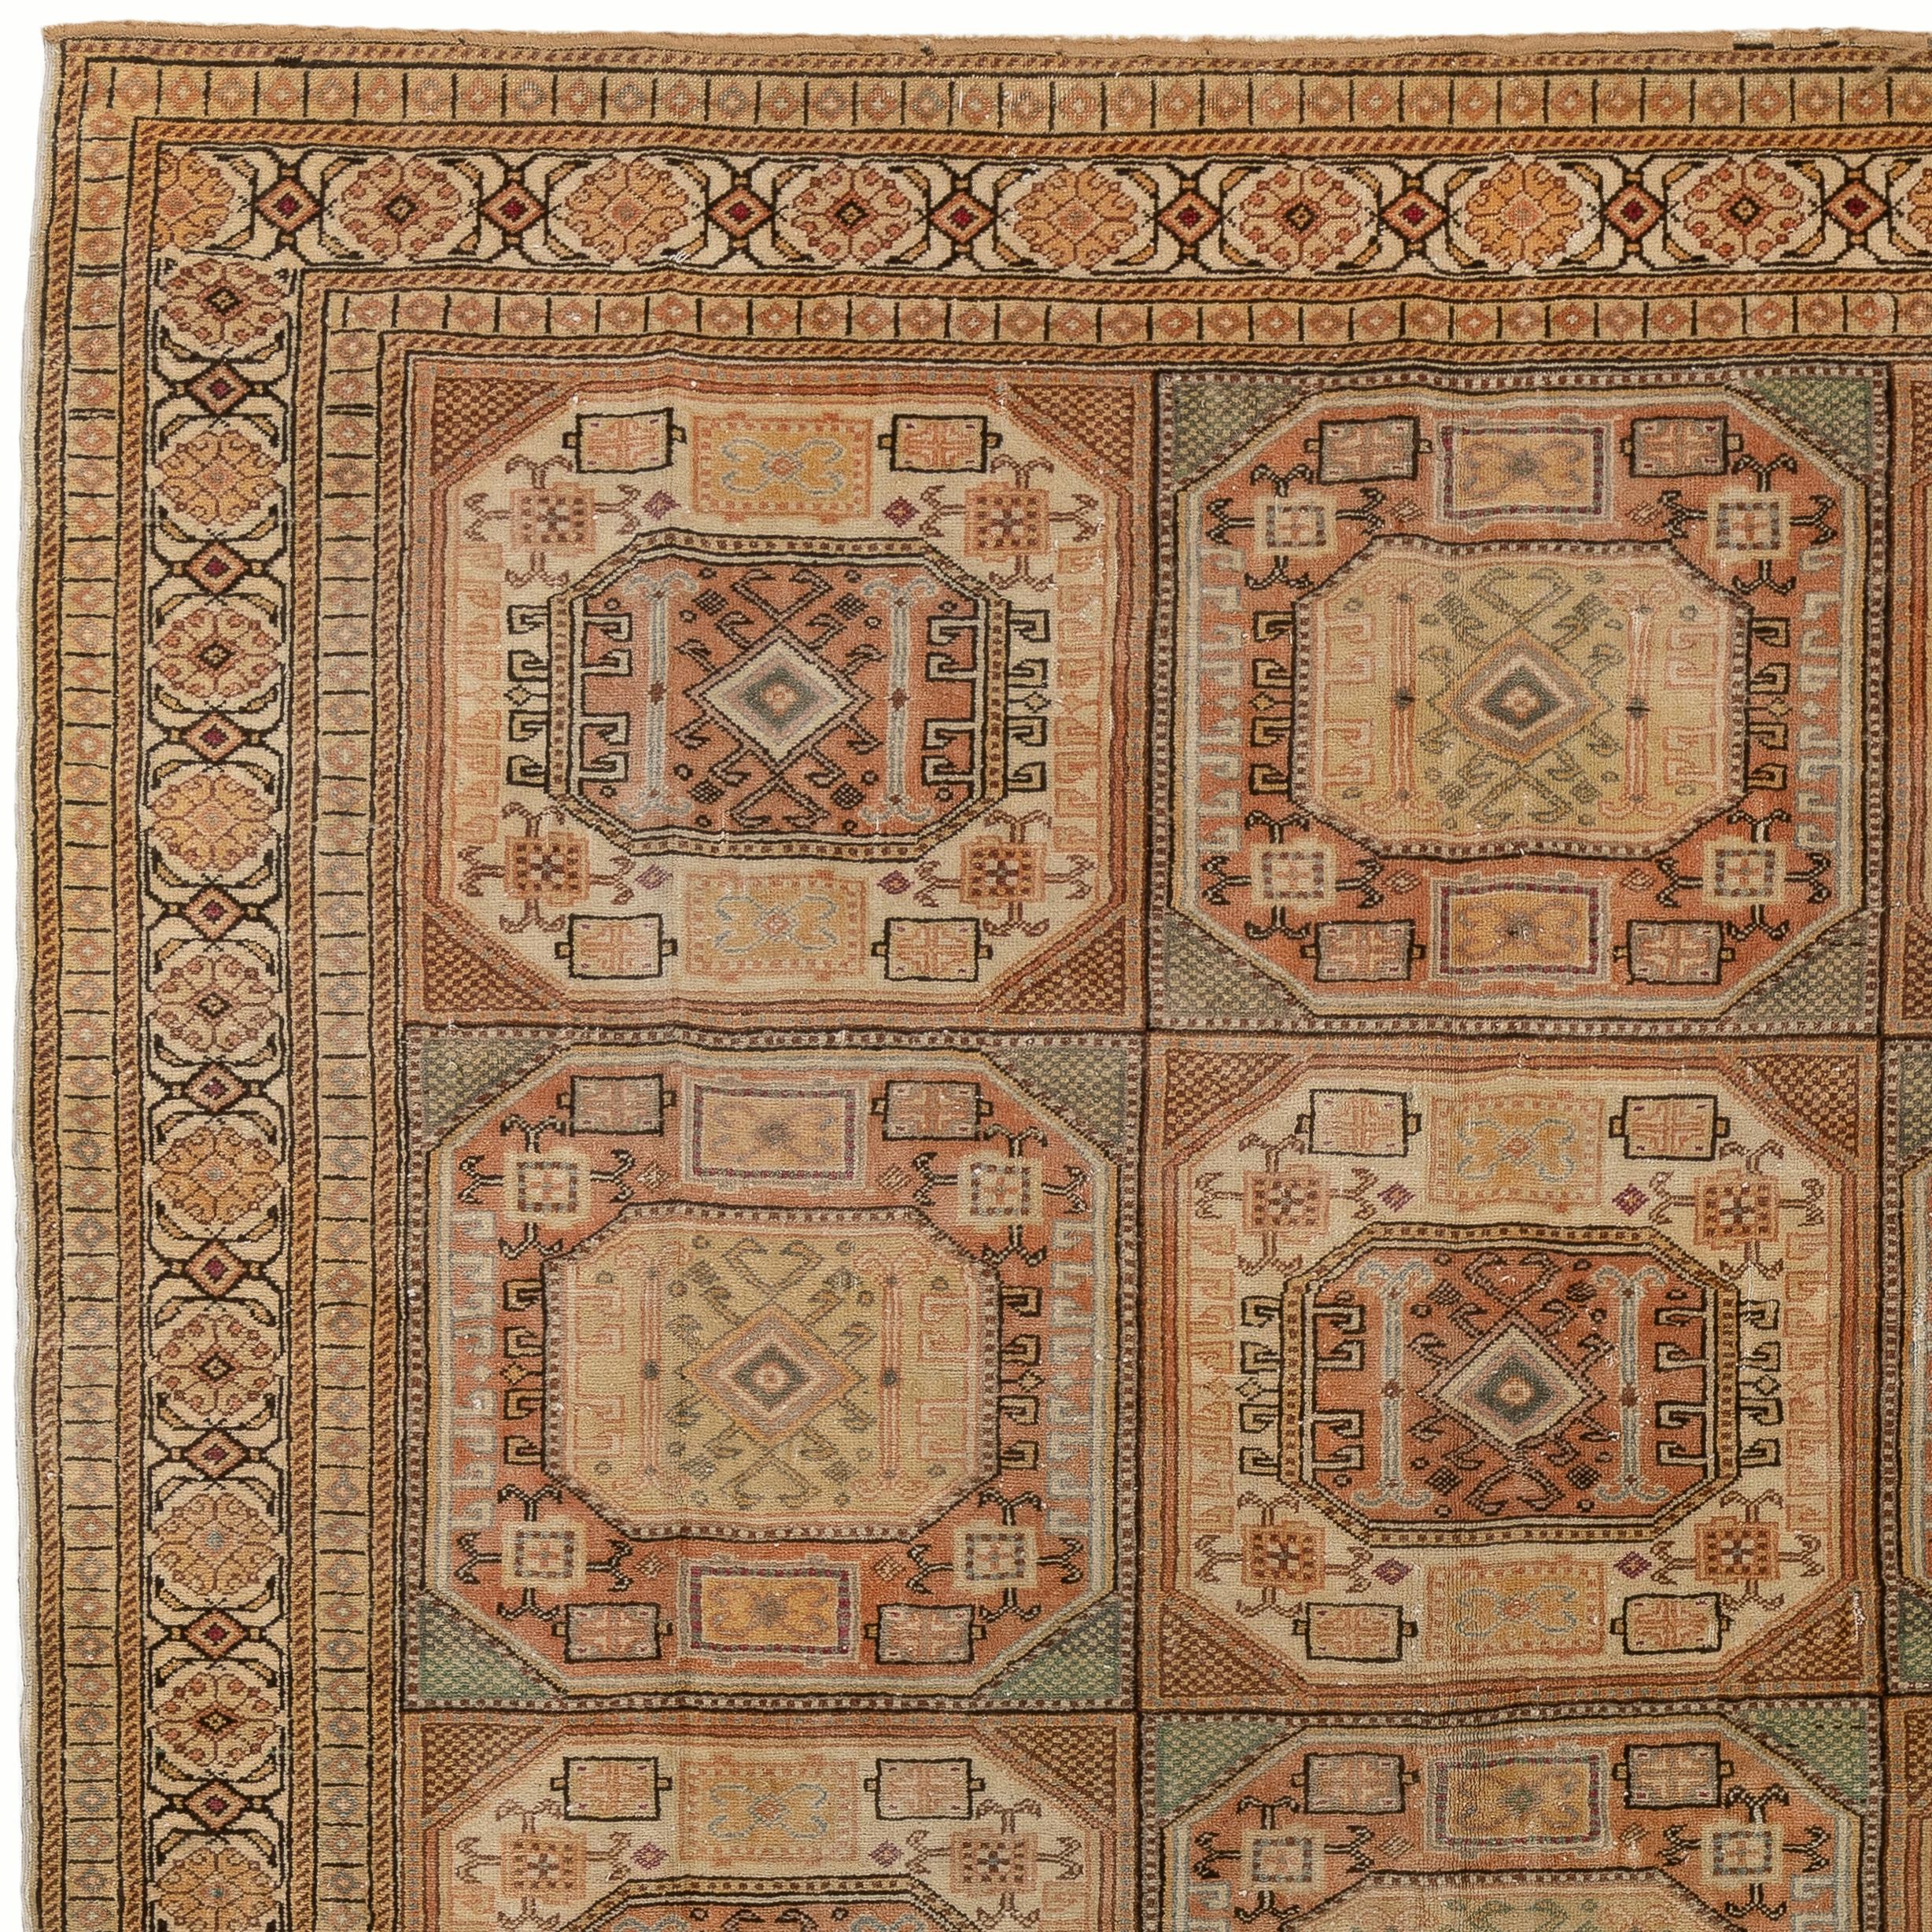 Ein fein handgeknüpfter Teppich aus der Stadt Kayseri in Zentralanatolien mit weichen, gedeckten Farben und einem gut gezeichneten geometrischen Muster mit Stammesmotiven. 
Größe: 6.6 x 9.4 Ft.
Weicher, mittelhoher Wollflor auf Baumwollbasis.
Der